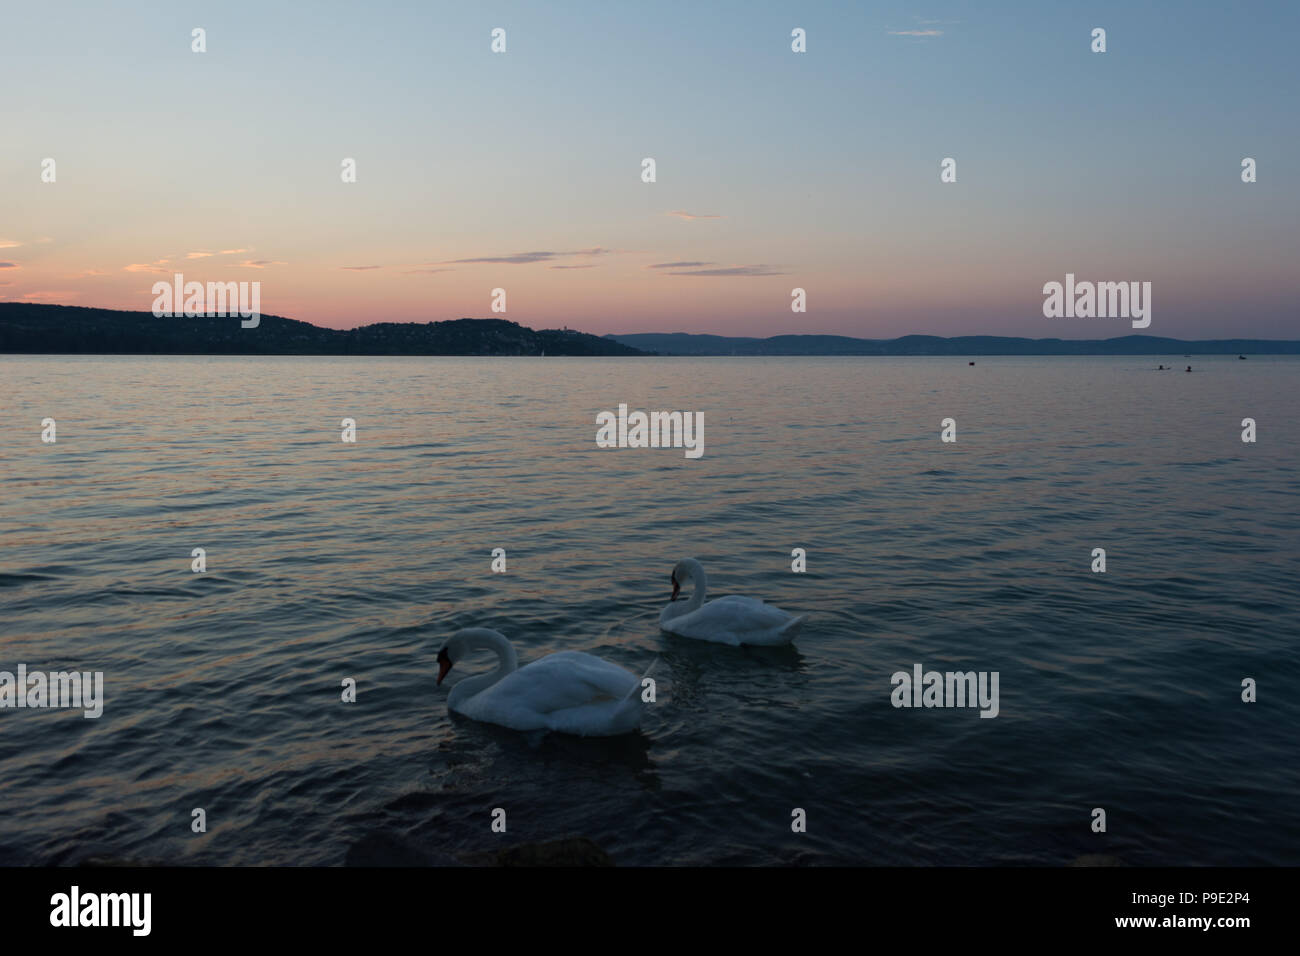 El lago de los cisnes con cisnes blancos en un clima soleado, Balaton, Hungría Foto de stock